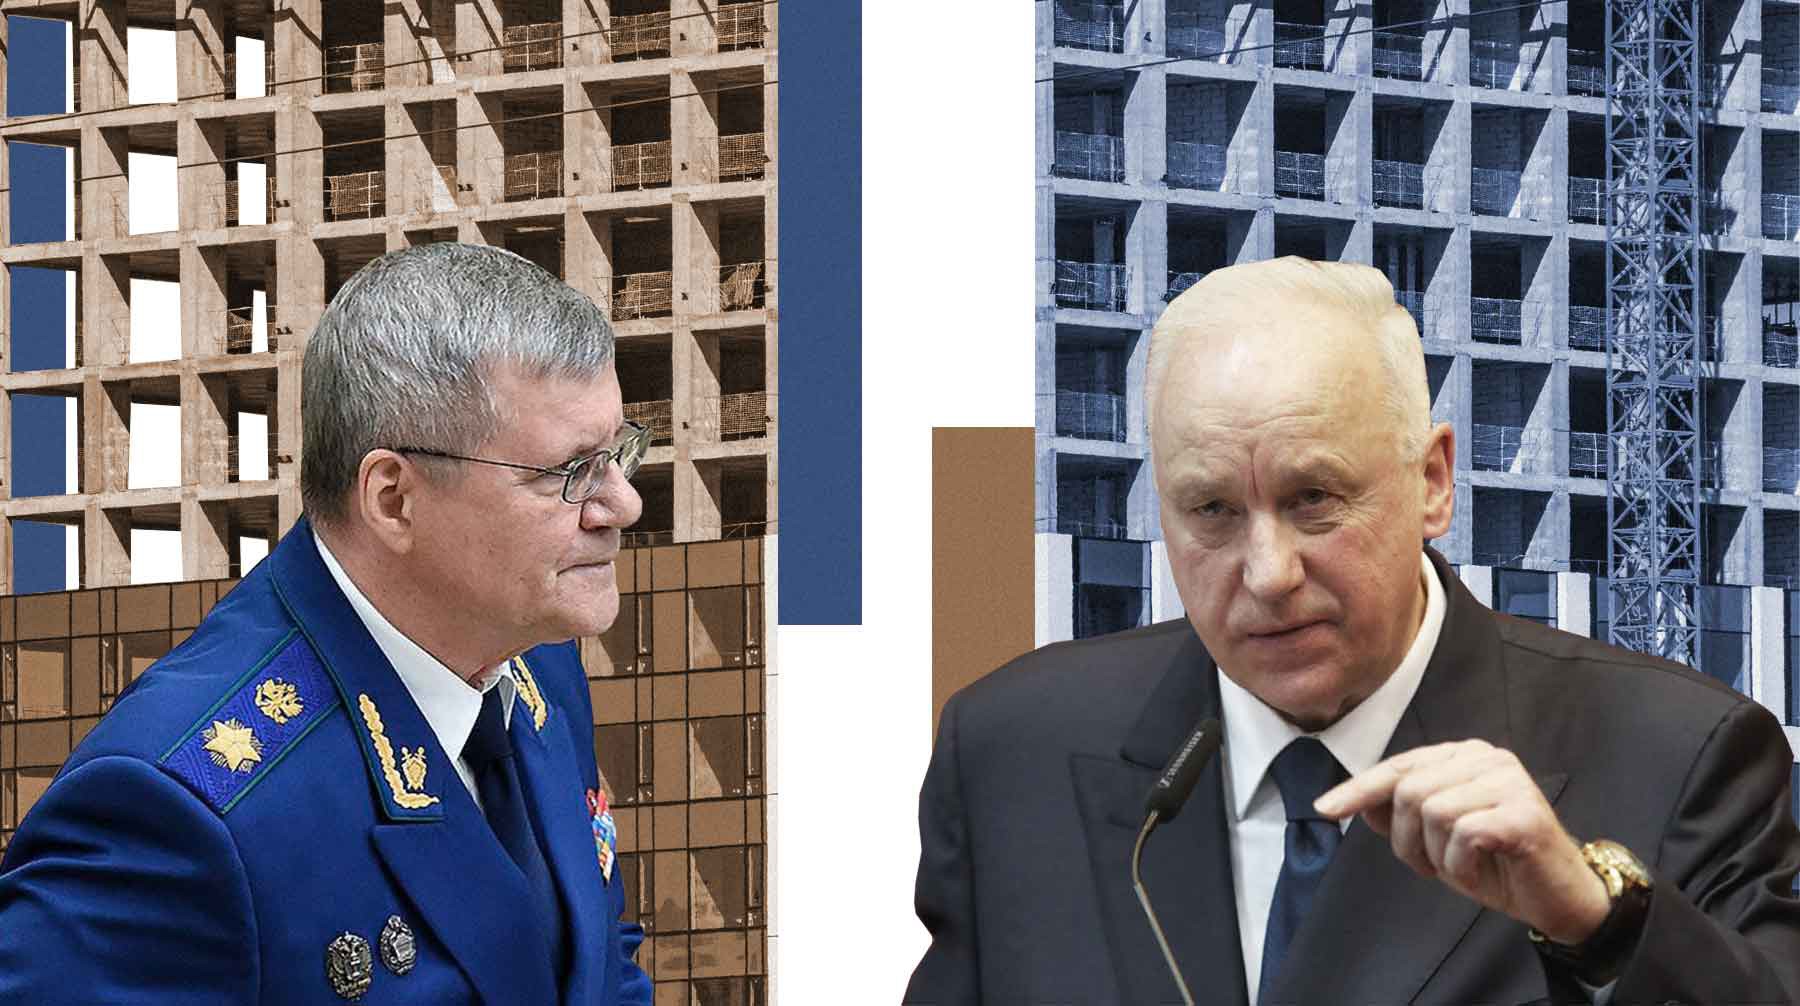 Dailystorm - Бастрыкин против Чайки: обманутые дольщики судятся с генпрокурором при негласной поддержке СК